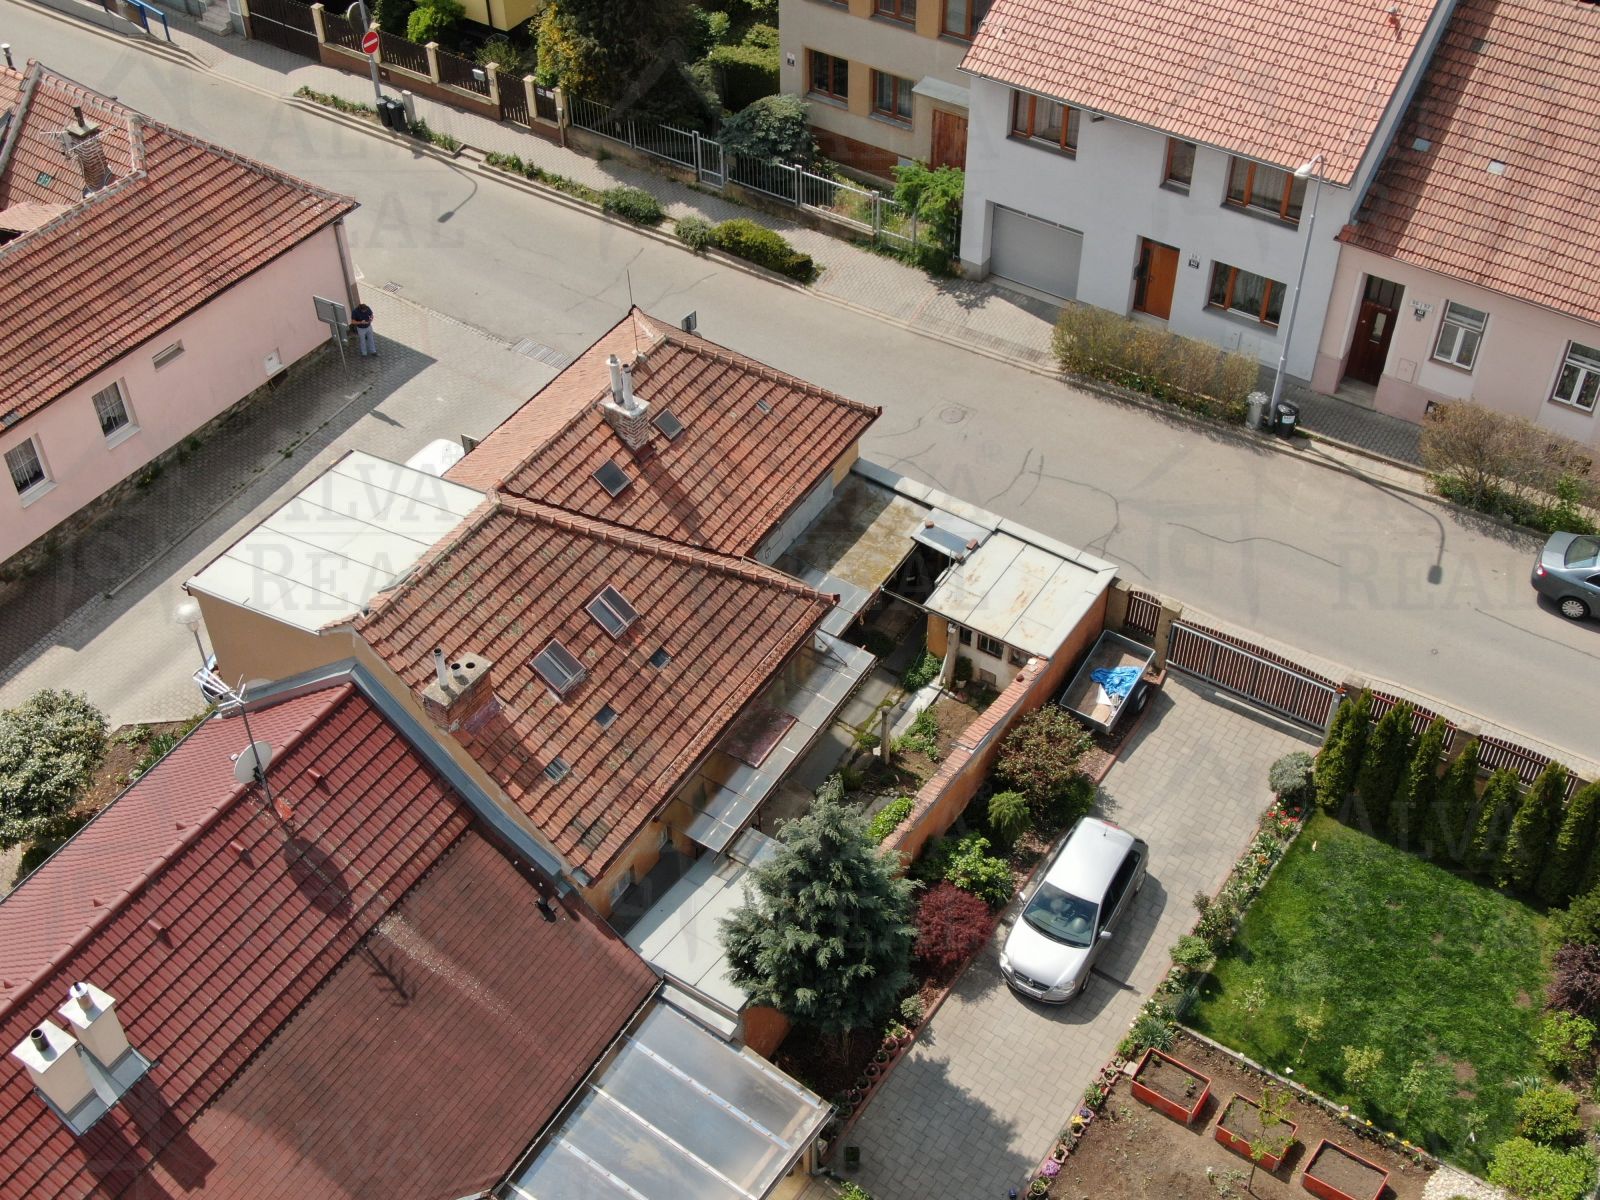 Nabízíme Vám rodinný dům 3+1 v Brně Jundrově, ulice Pivoňkova s pozemkem 168 m2., obrázek č. 2